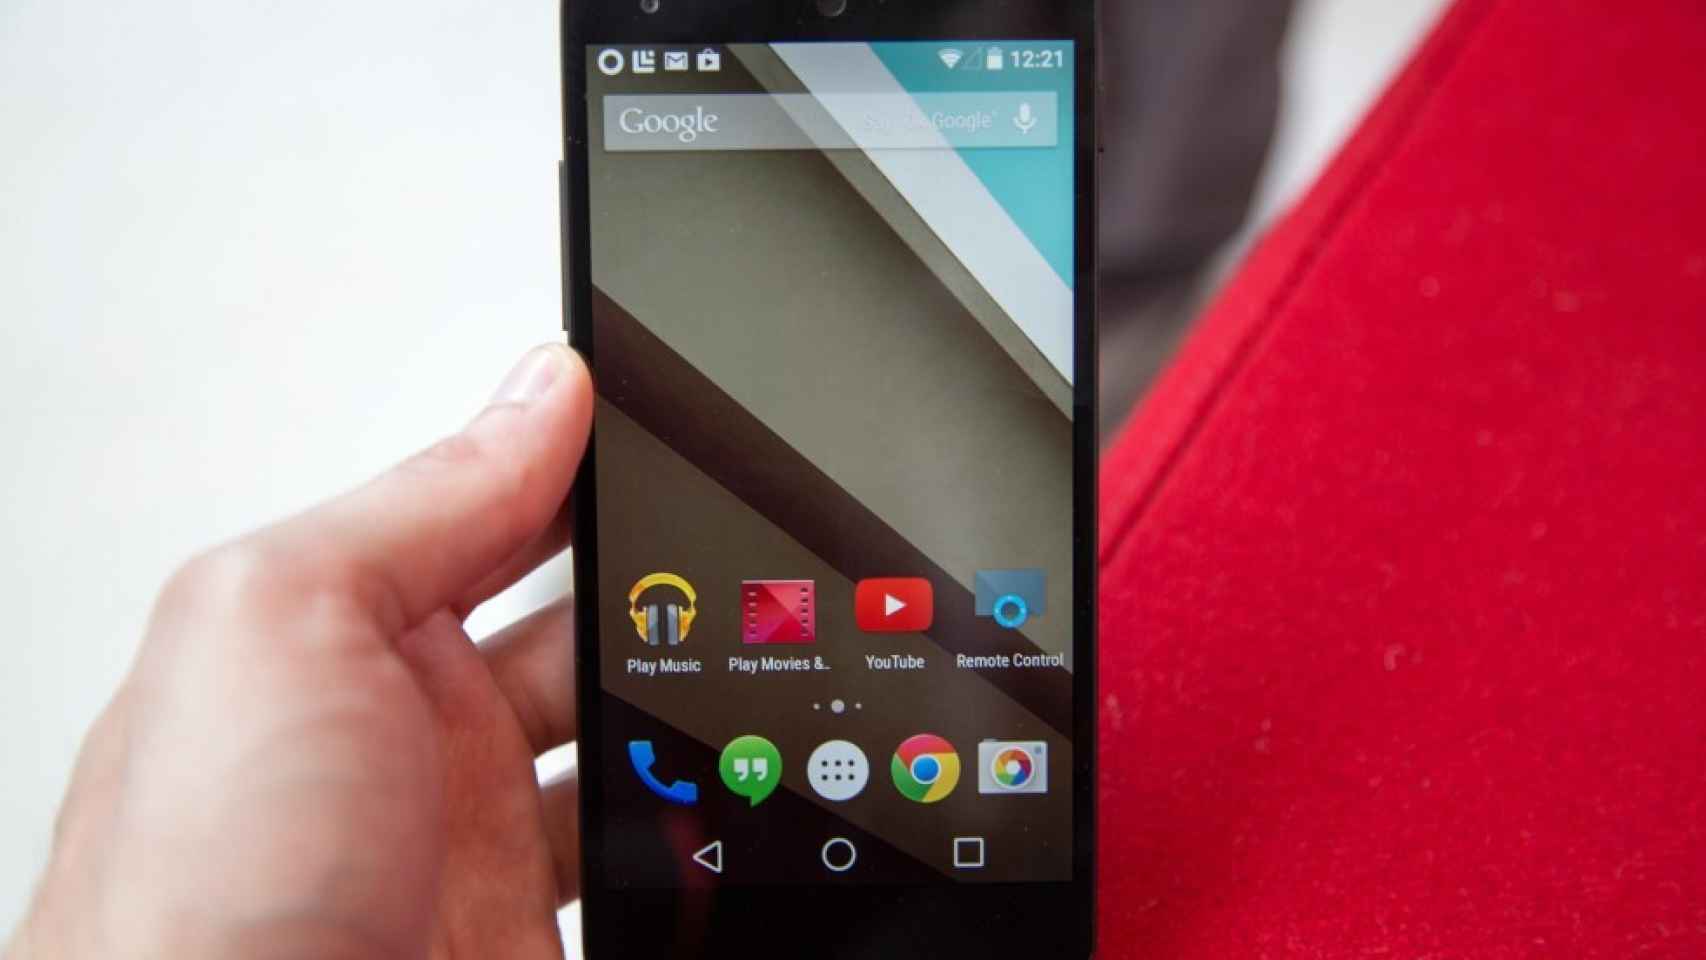 Android L corregirá el bug de la cámara que afecta a la batería del Nexus 5